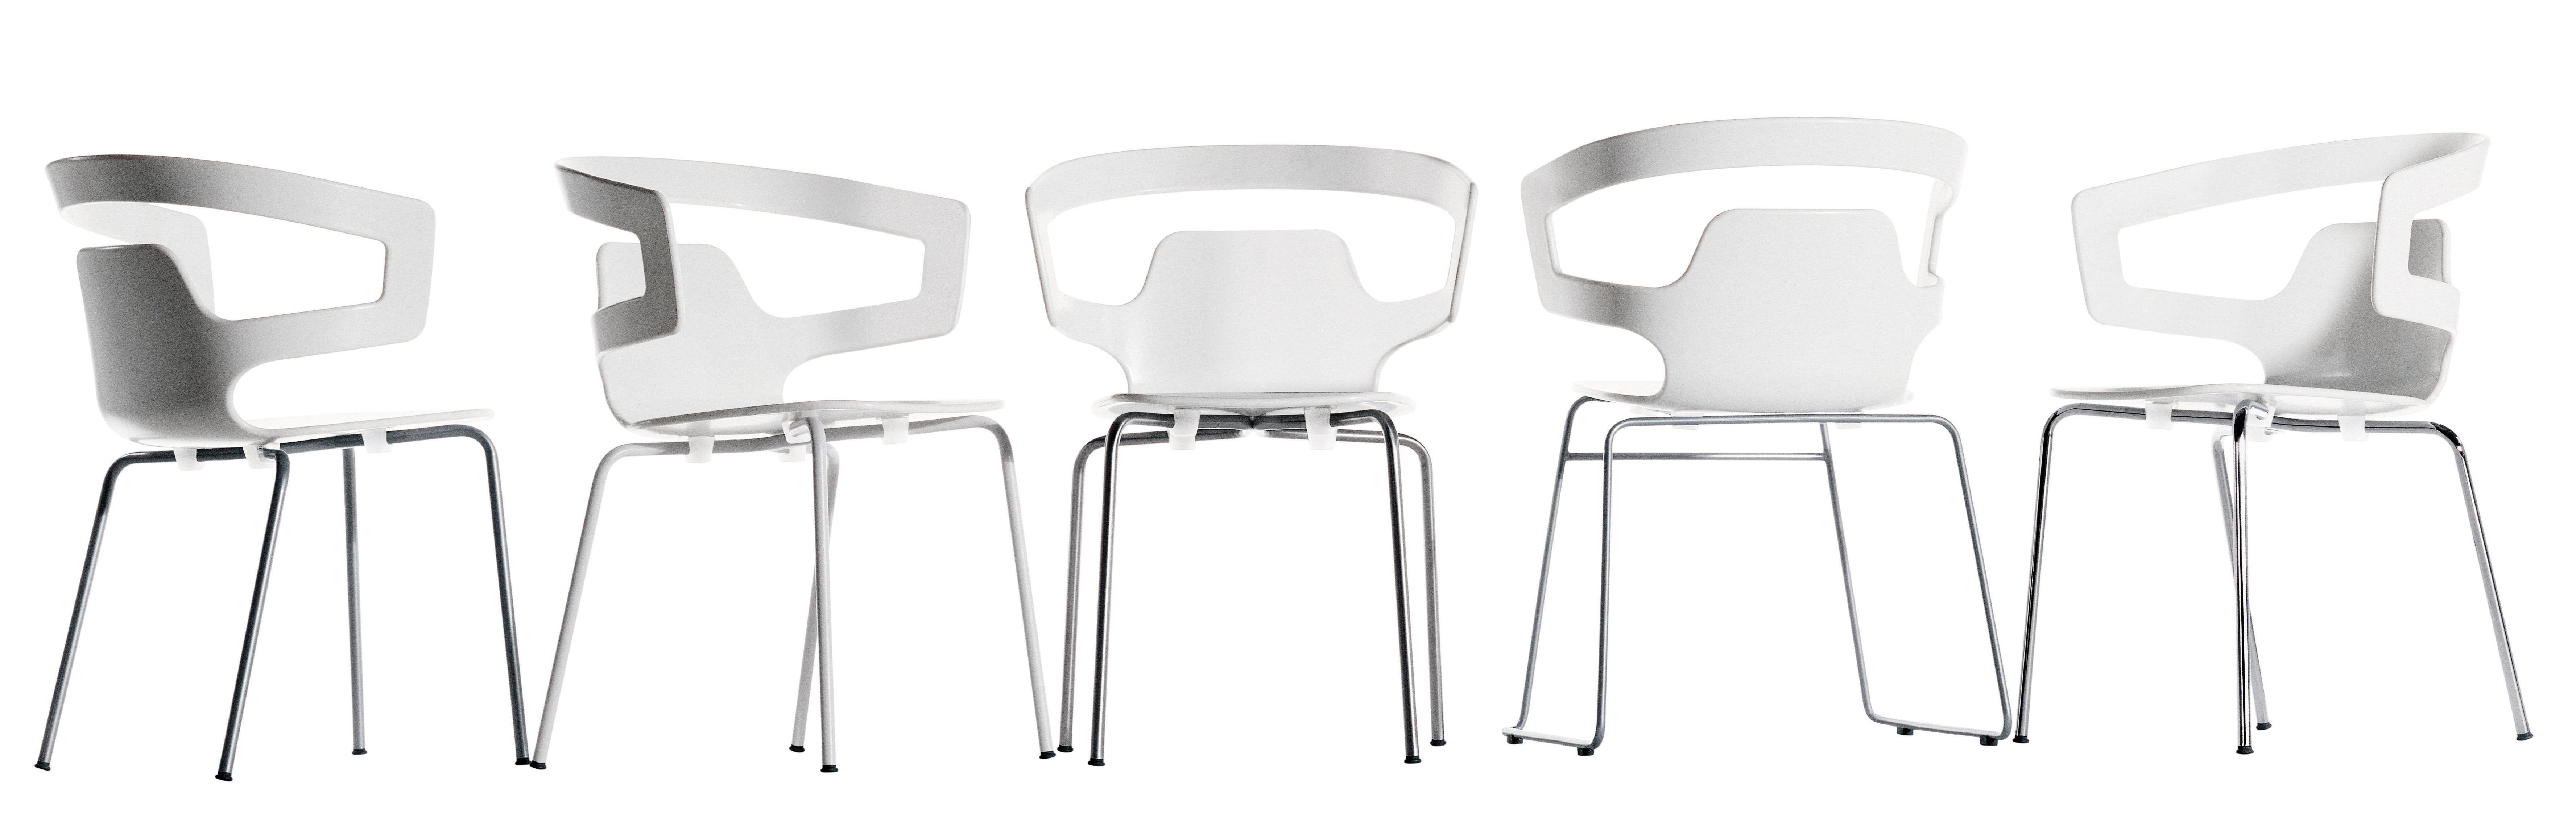 Alias 501 Segesta Sledge Chair in White & Chromed Steel Frame by Alfredo Häberli For Sale 1